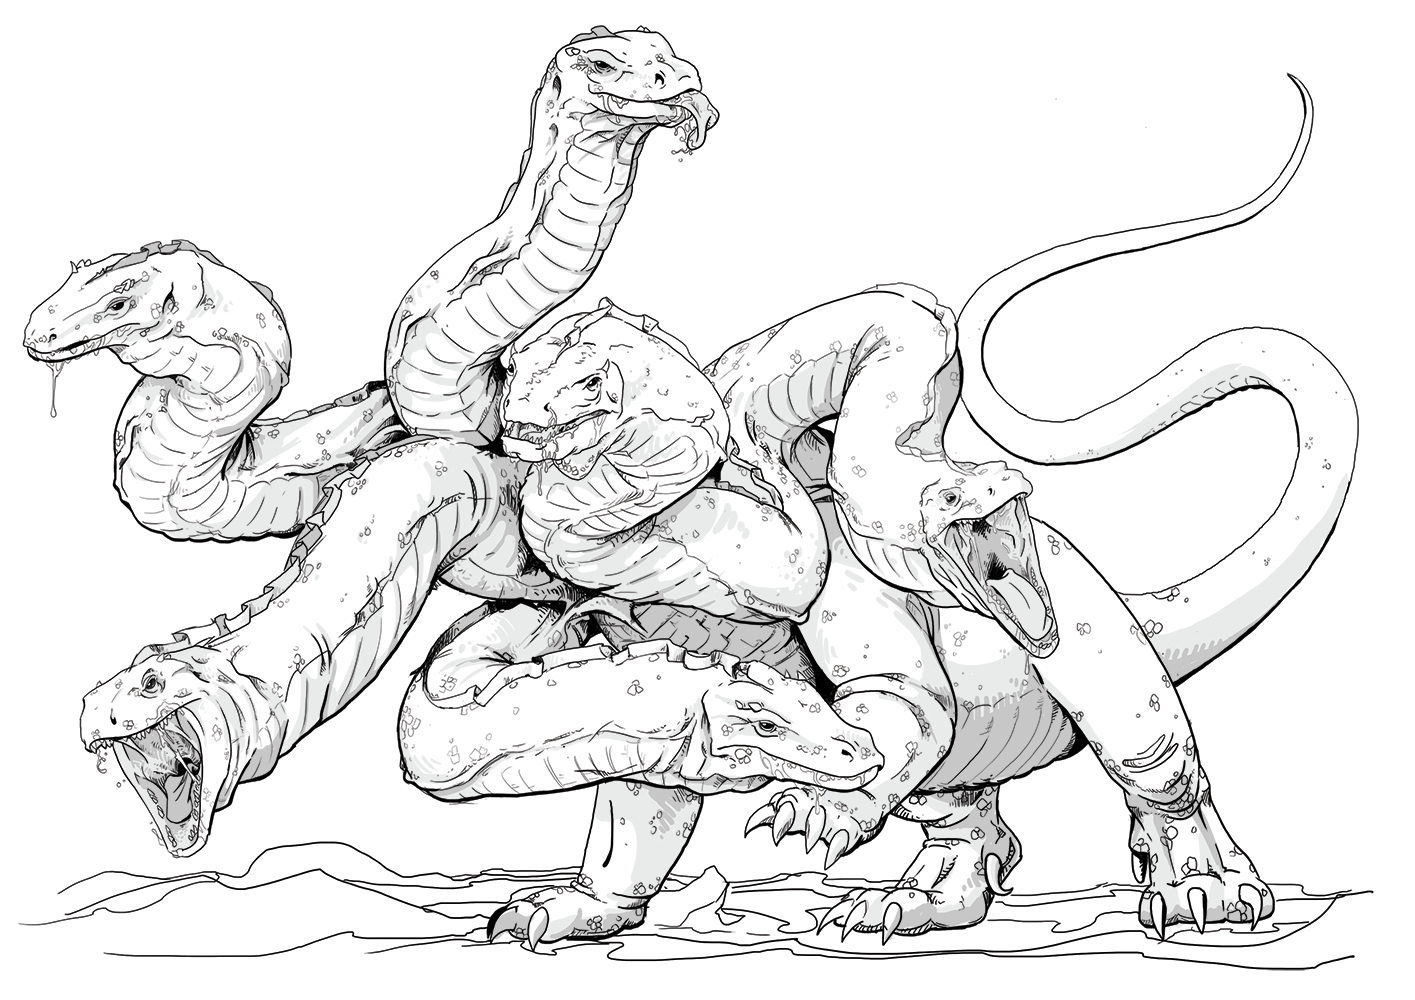 Nine-Headed Hydra by Mariana Ruiz Villarreal